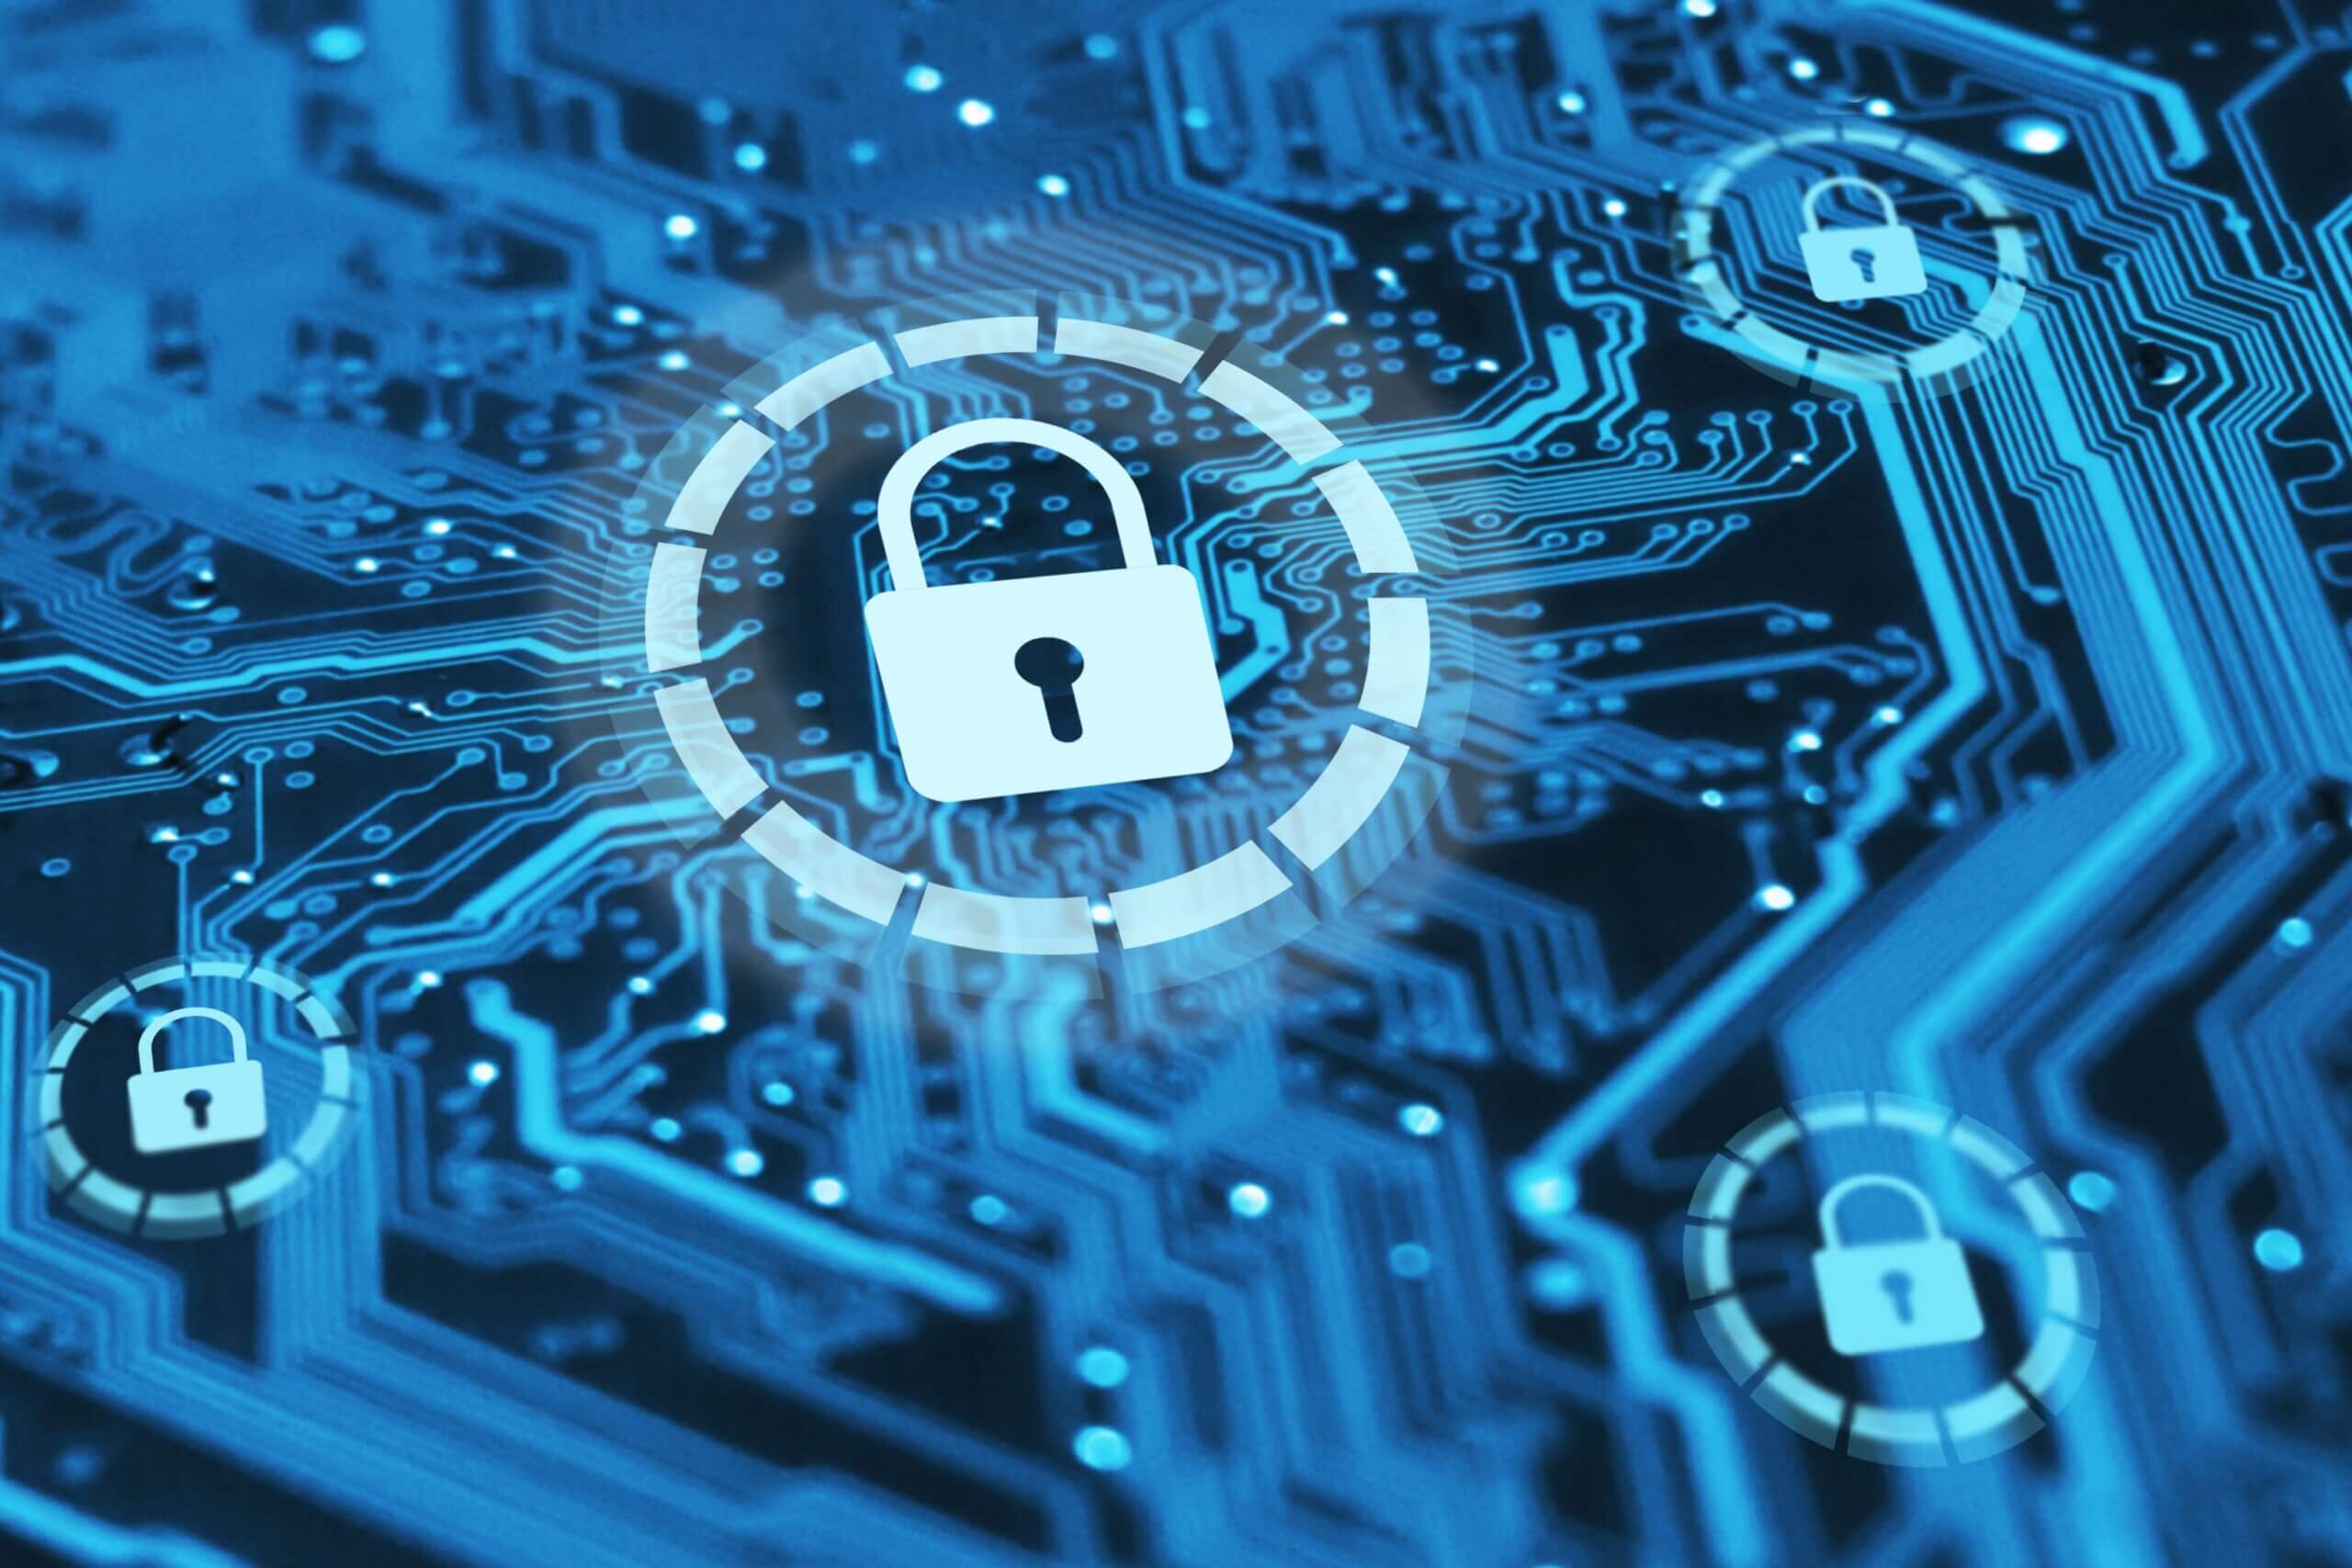 Imagem capa do conteúdo sobre "a importância da segurança da informação". Segurança cibernética e proteção de informações privadas e conceito de dados. Bloqueios no circuito integrado azul. Firewall do ataque de hackers.